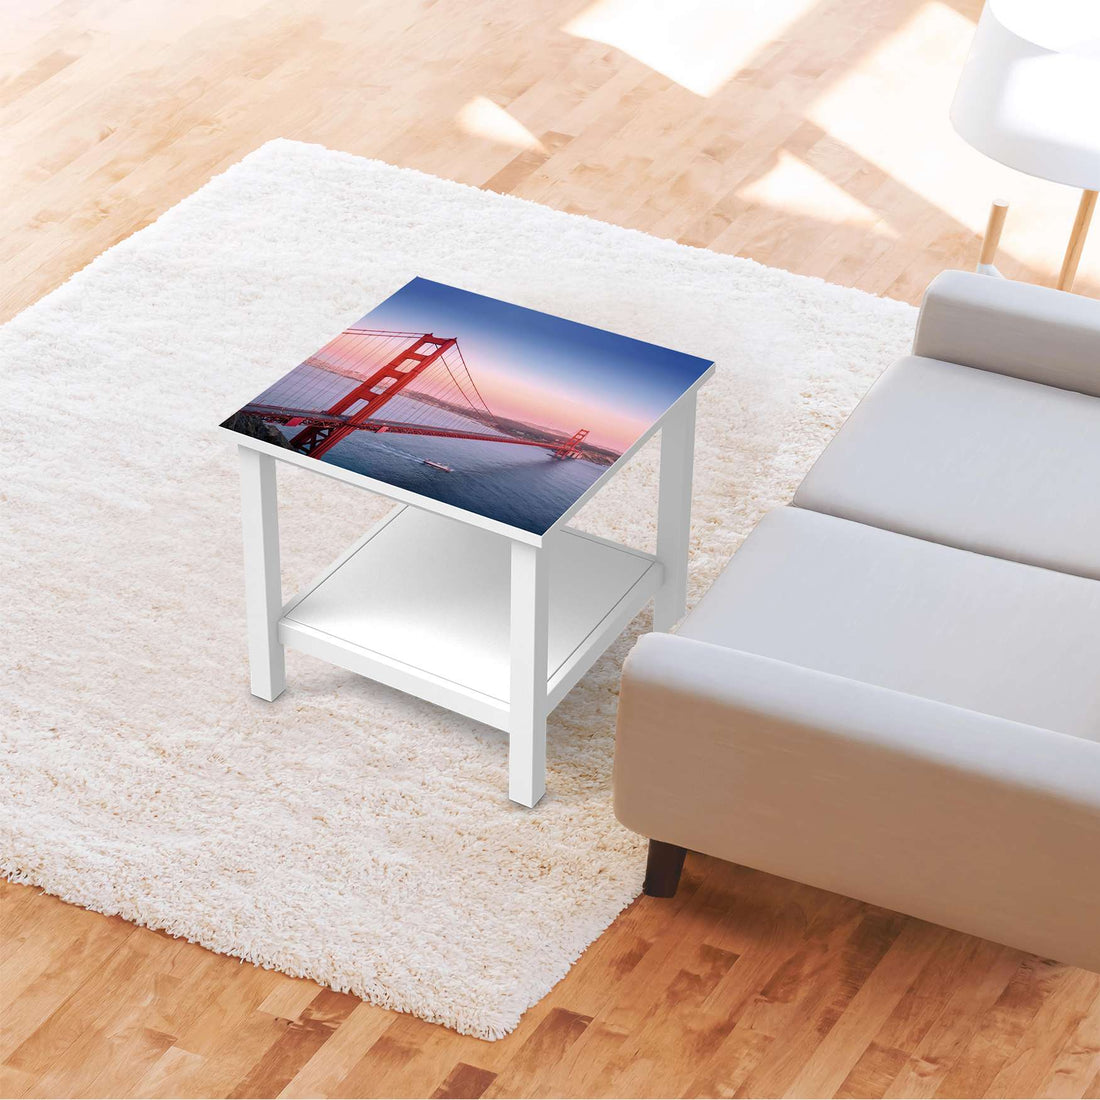 Möbel Klebefolie Golden Gate - IKEA Hemnes Beistelltisch 55x55 cm - Wohnzimmer